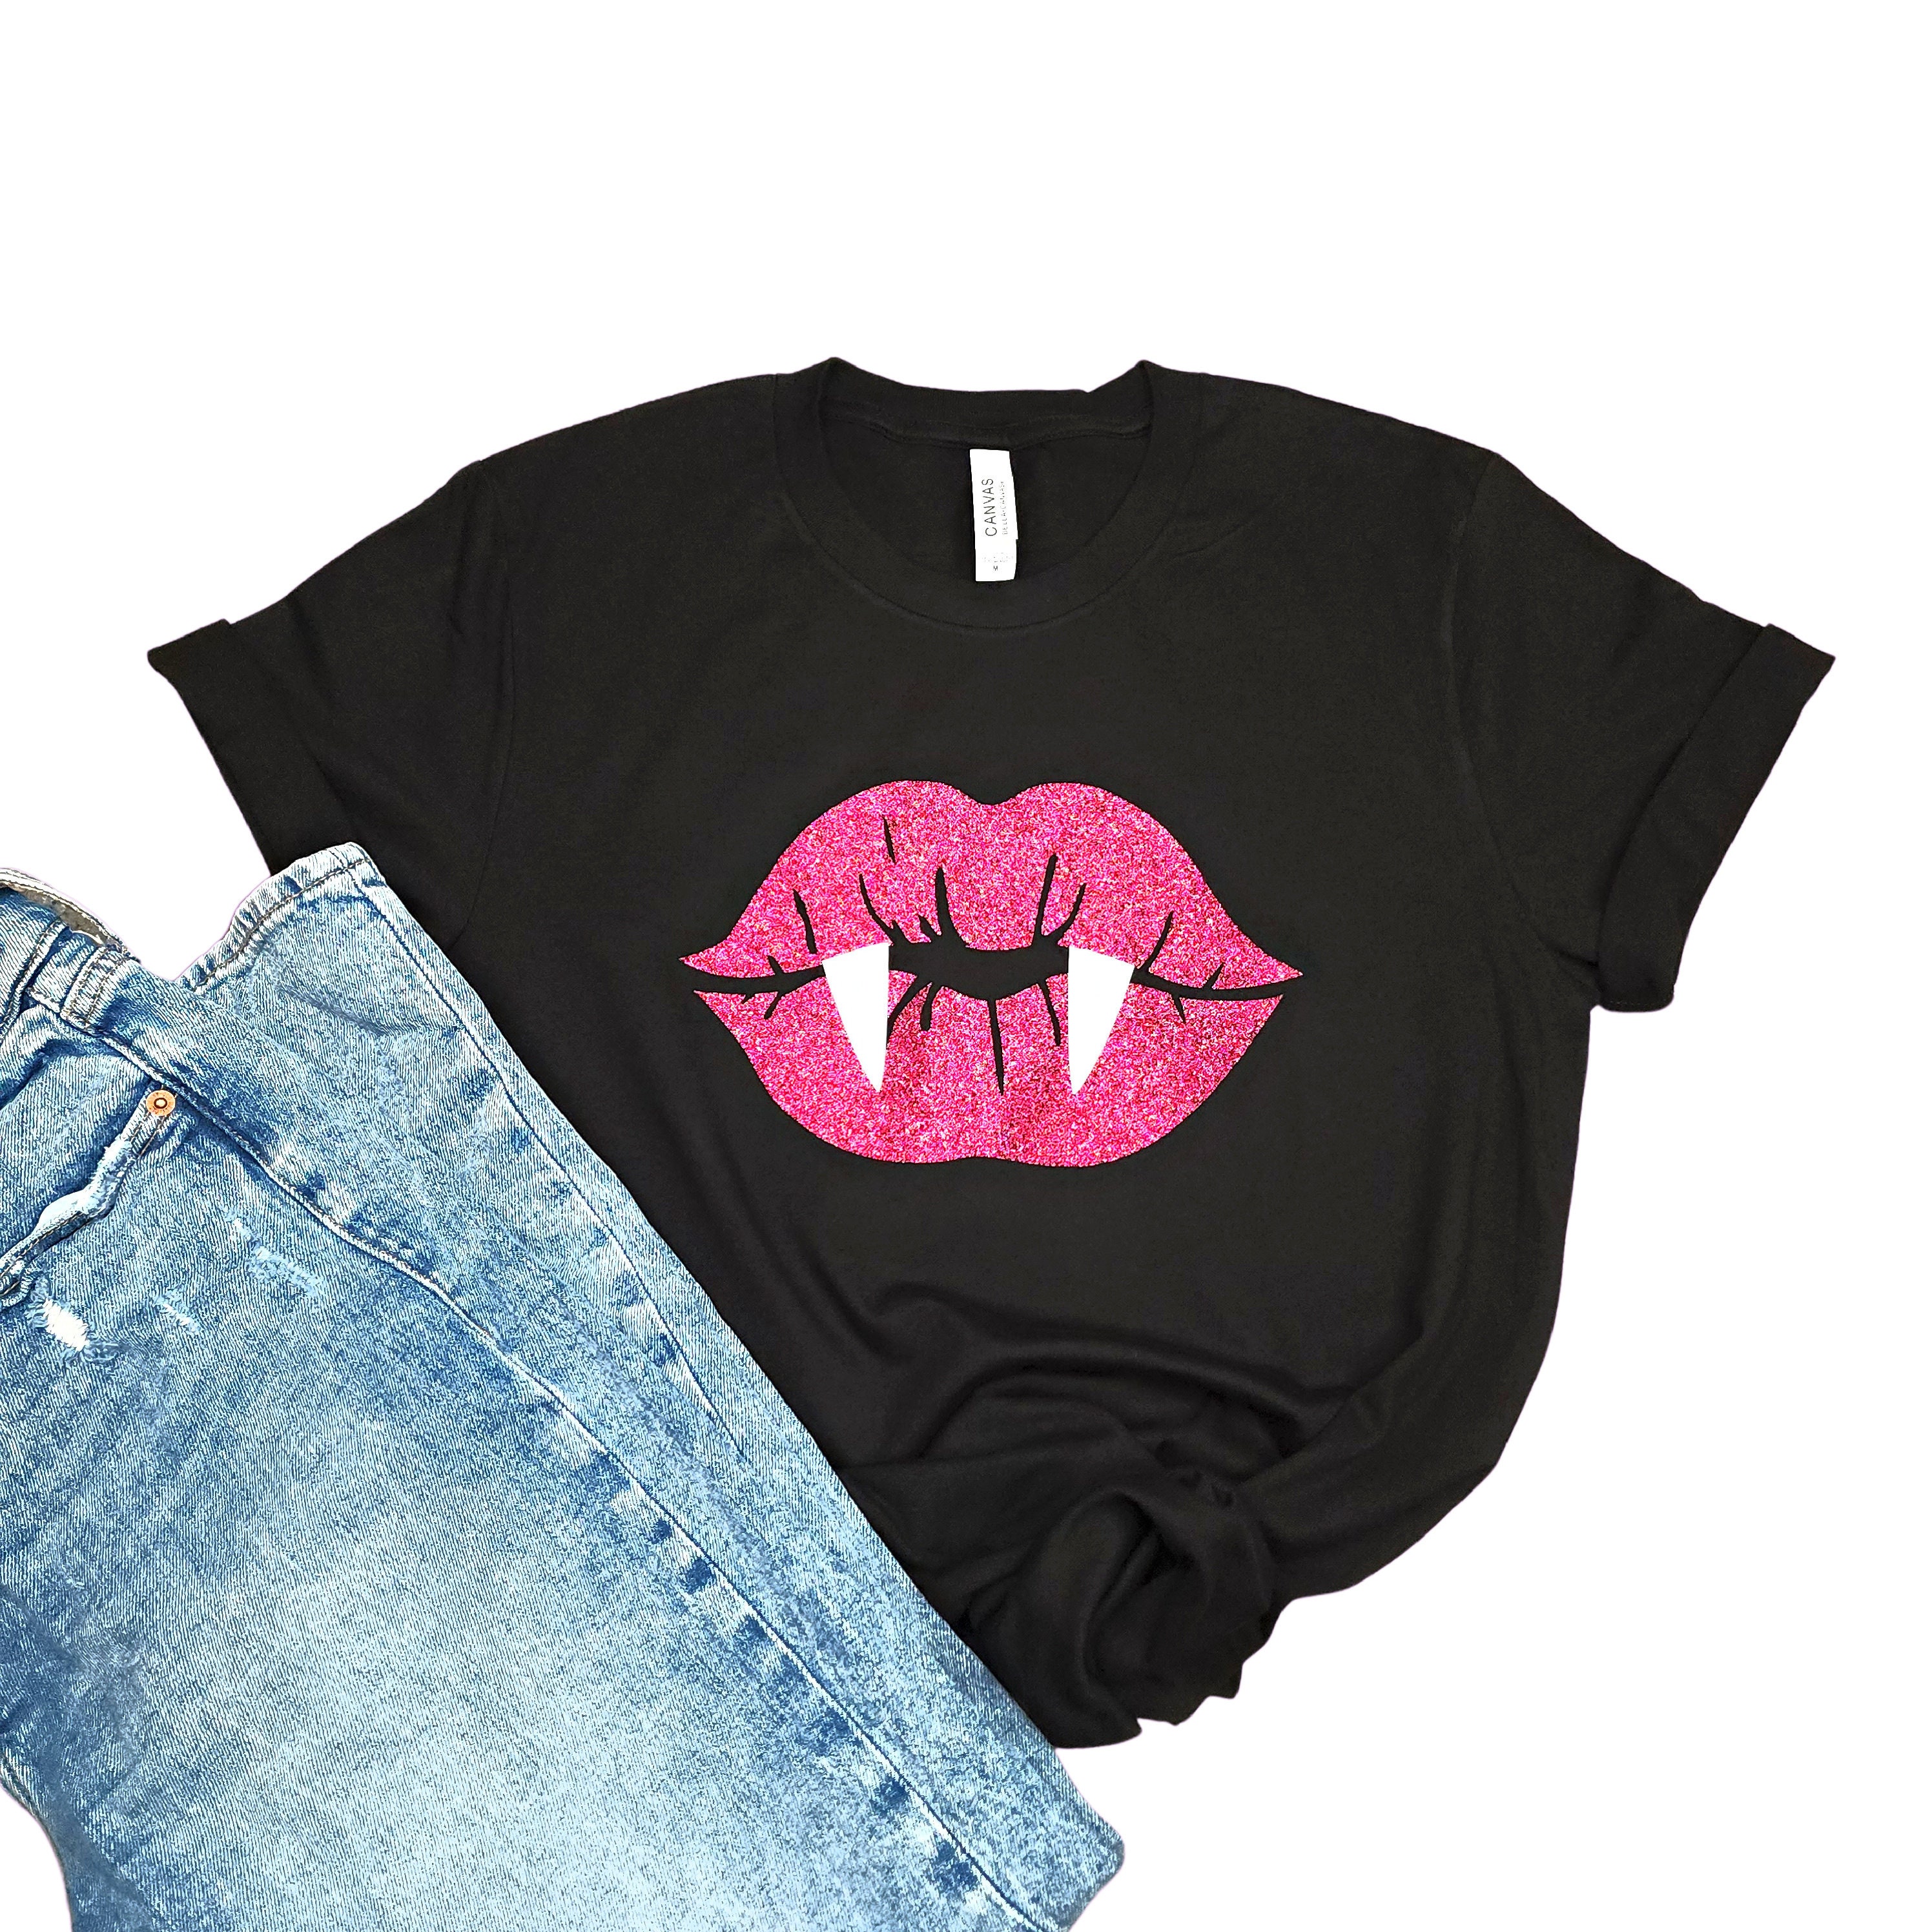 ZEFOTIM Women Girls Plus Size Lips Print Shirt Short Sleeve T Shirt Blouse Tops 